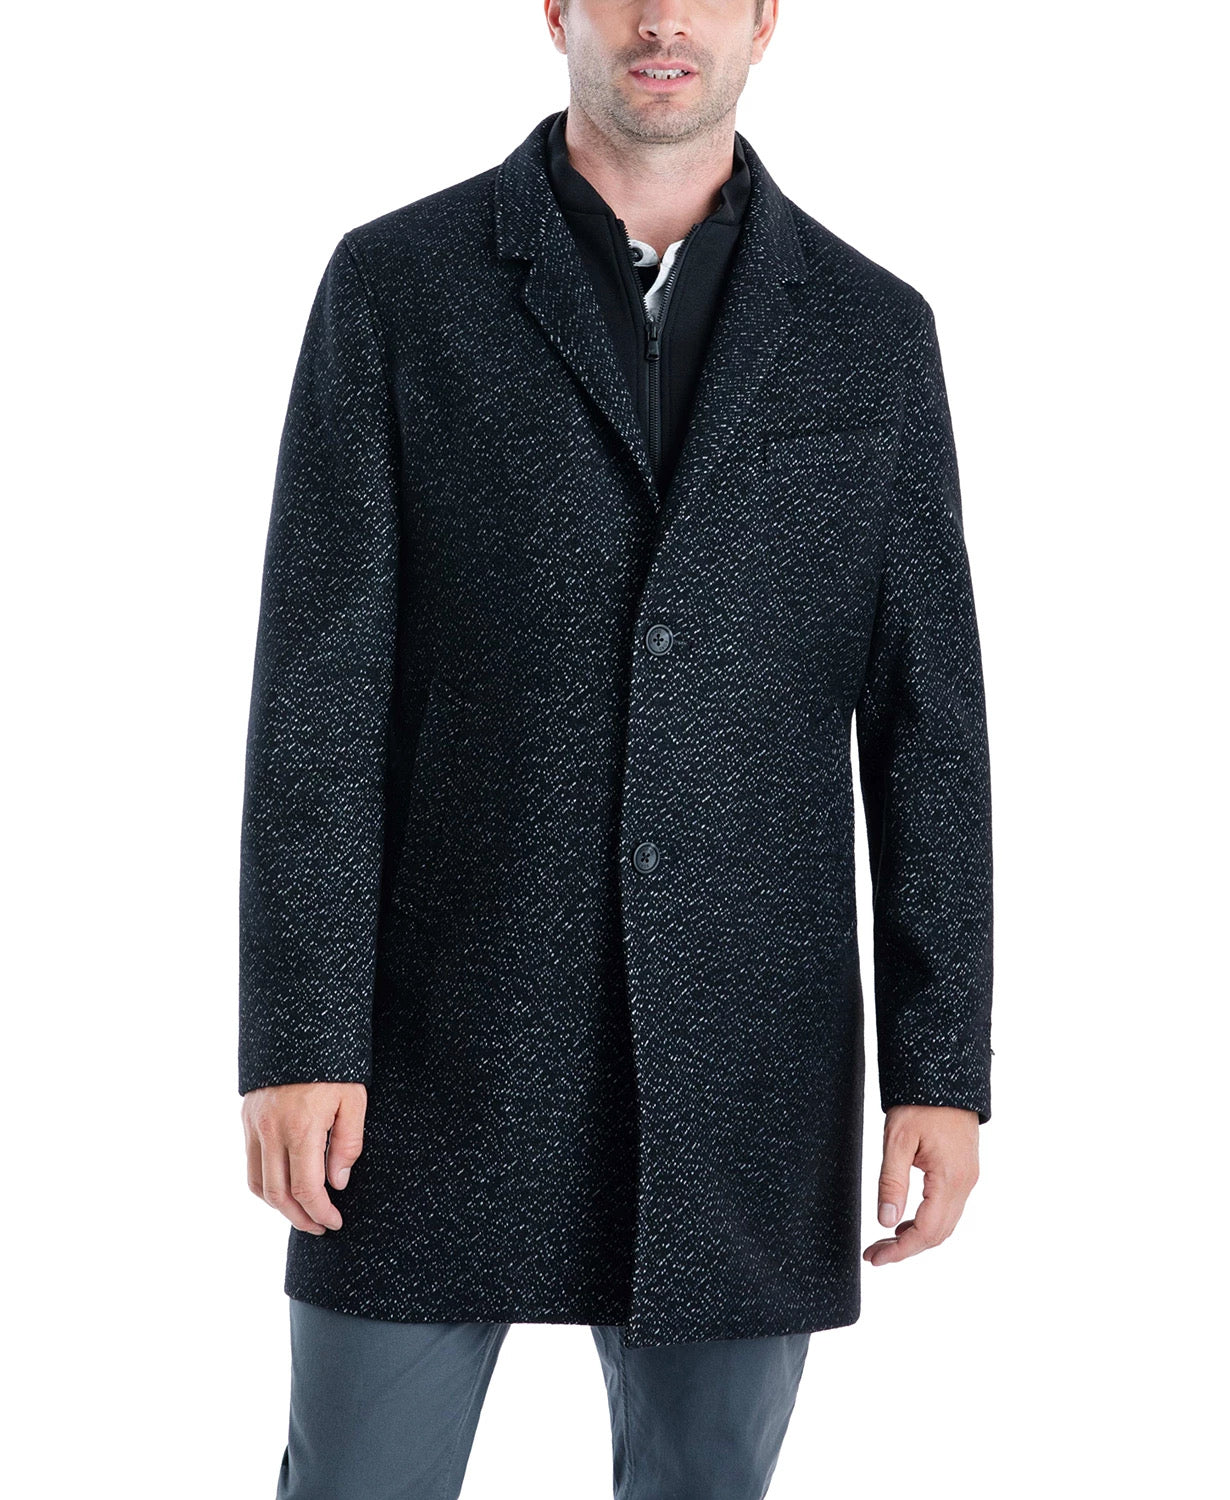 Michael Kors Men's Pike Slim Fit Top Coat 42L Black / White Overcoat